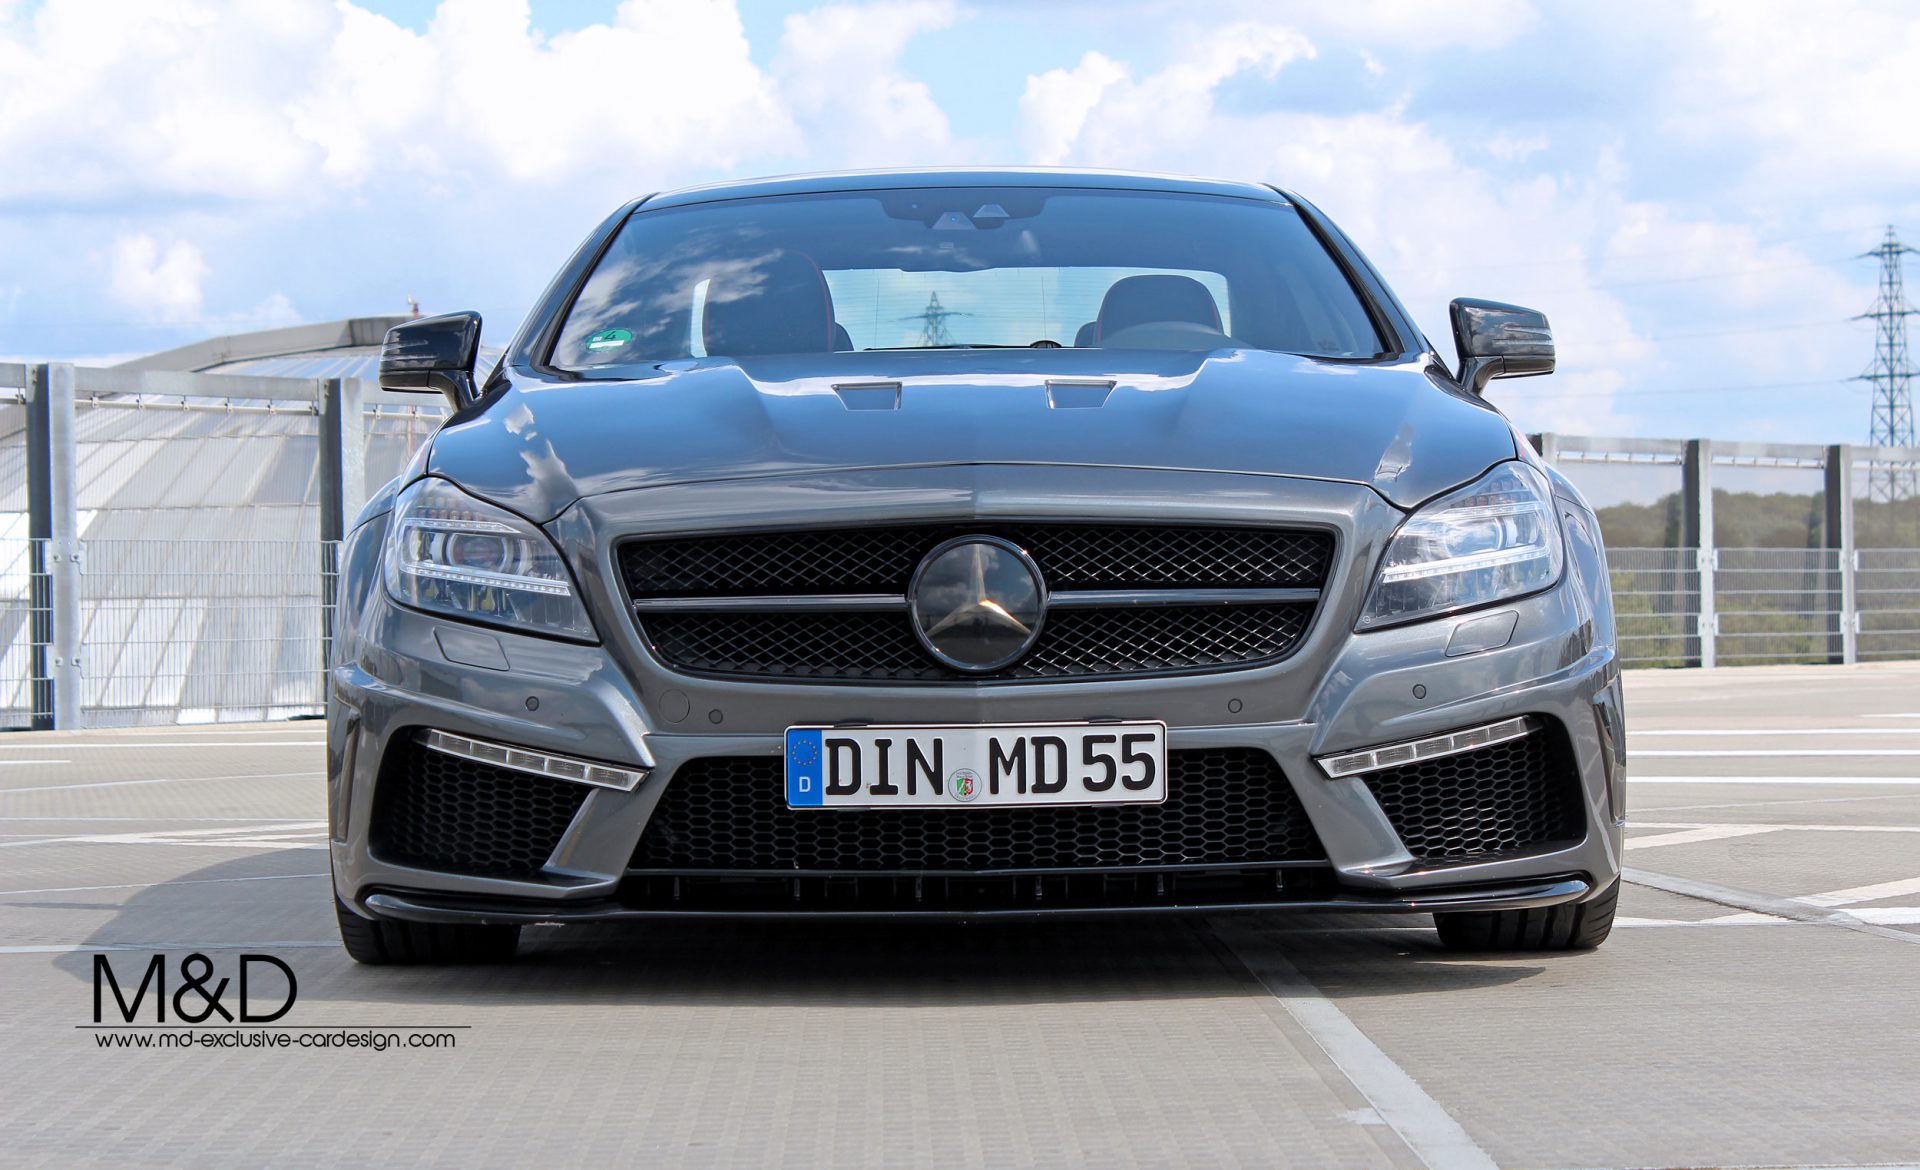 PD550 Black Edition Motorhaubenaufsatz für Mercedes CLS W218